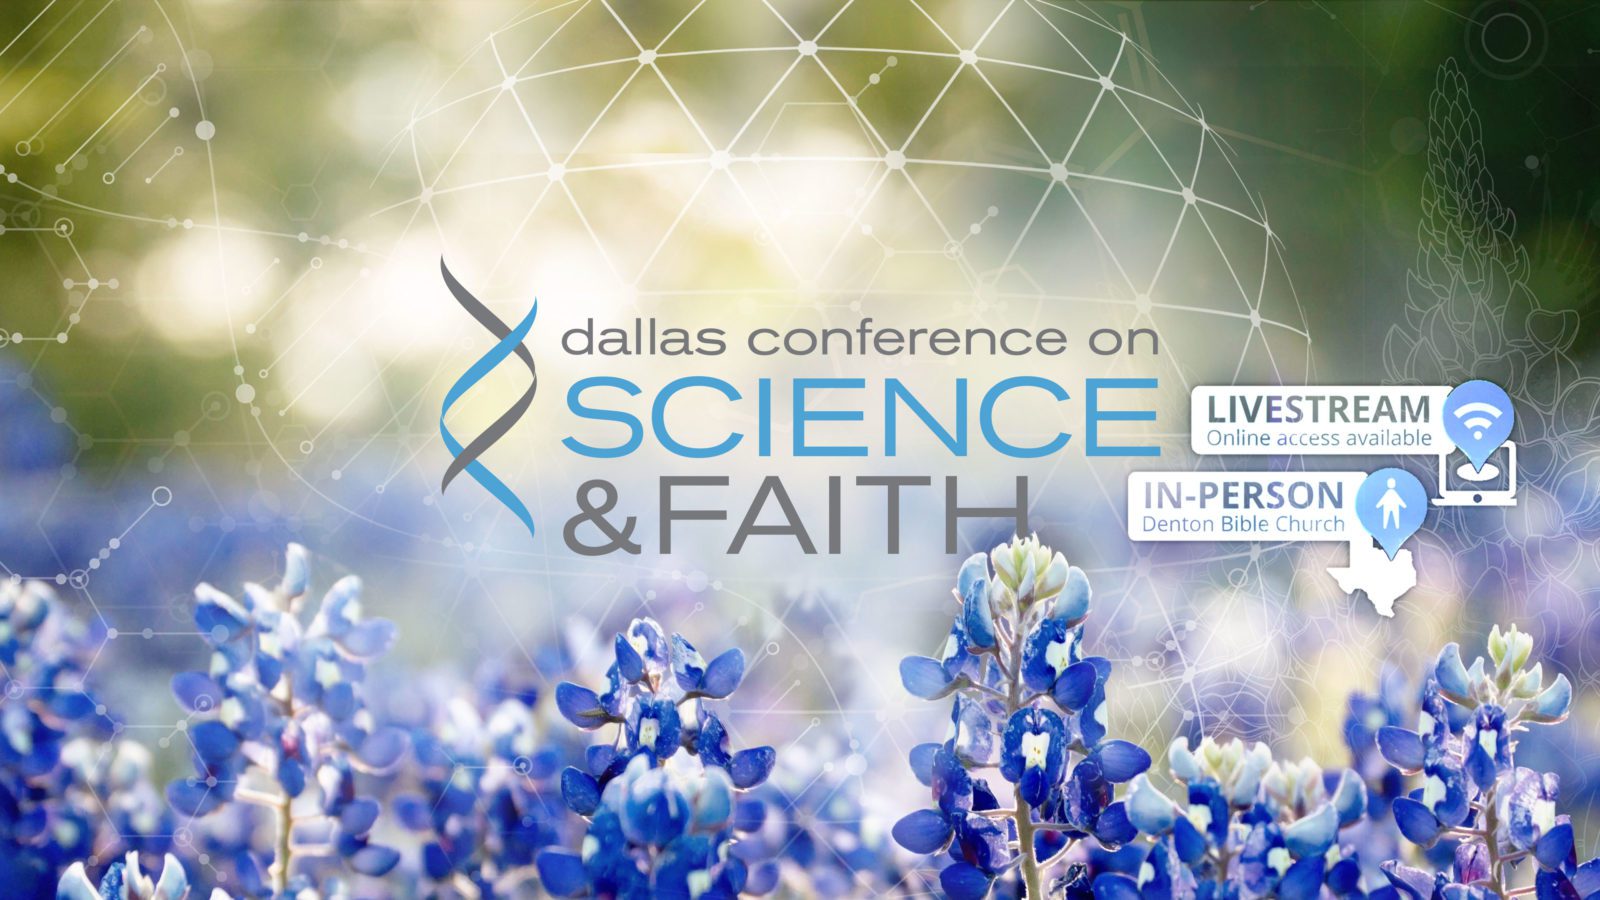 conferencia de dallas sobre ciencia y fe